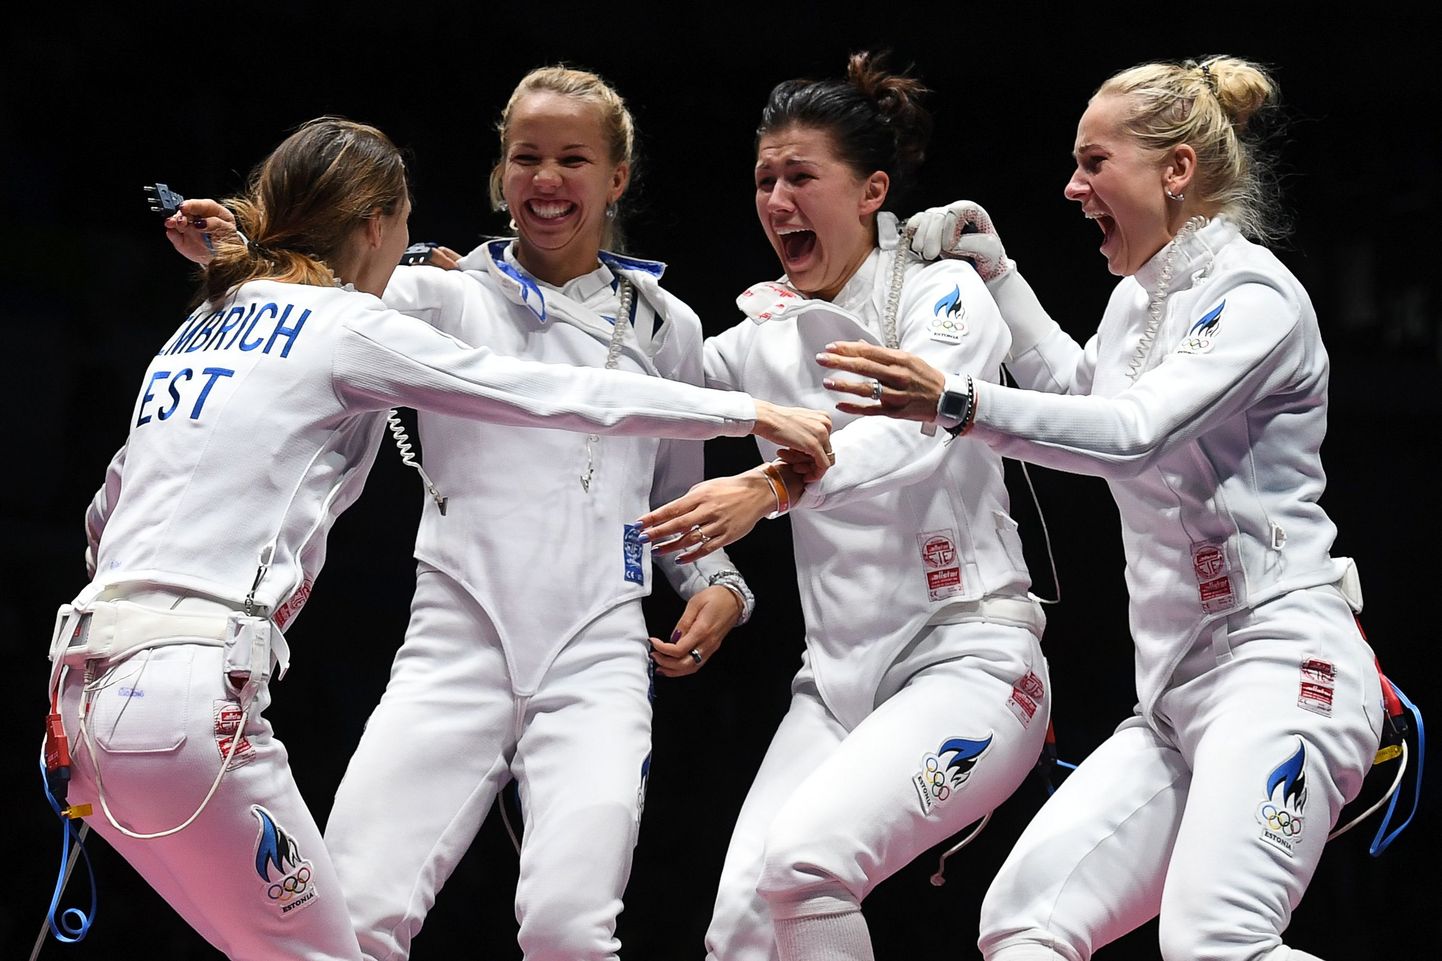 Eesti epeenaiskond Rio olümpial koosseisus Irina Embrich (vasakul), Erika Kirpu, Julia Beljajeva ning Kristina Kuusk.